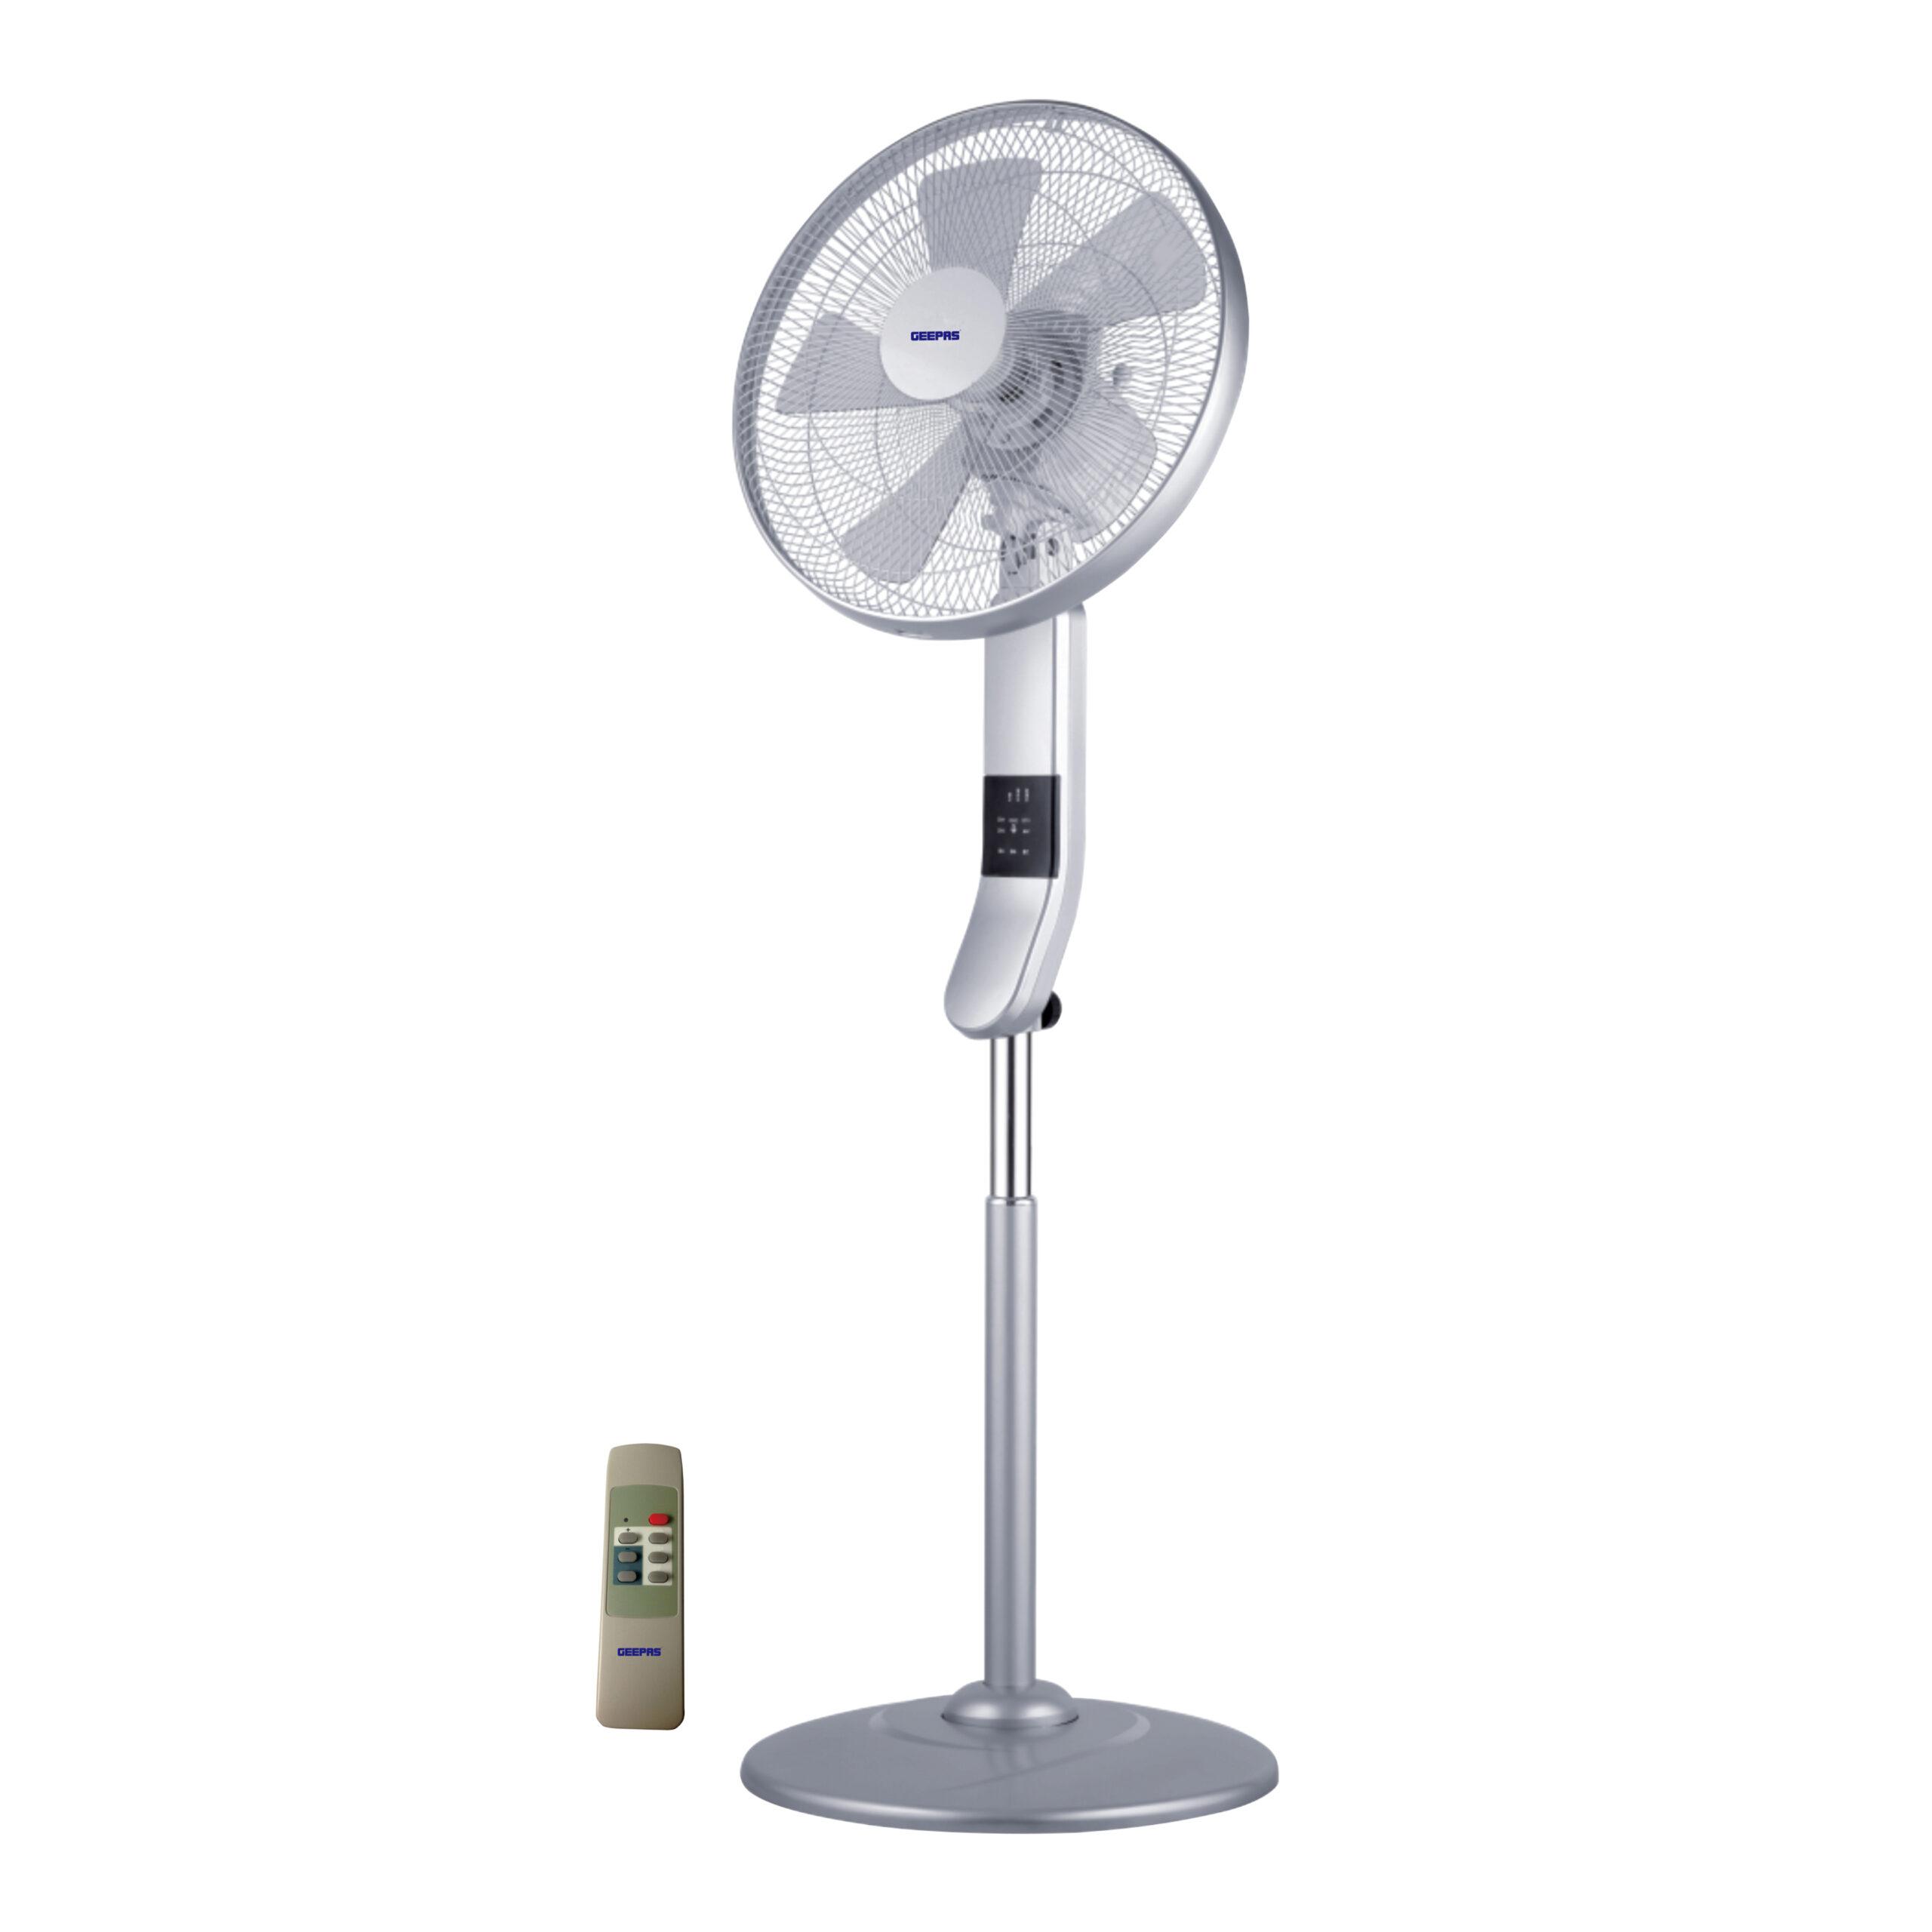 مروحة Geepas Stand Fan With Remote Control 50W - 3 Speed, 5 Leaf Blade, Adjustable Height